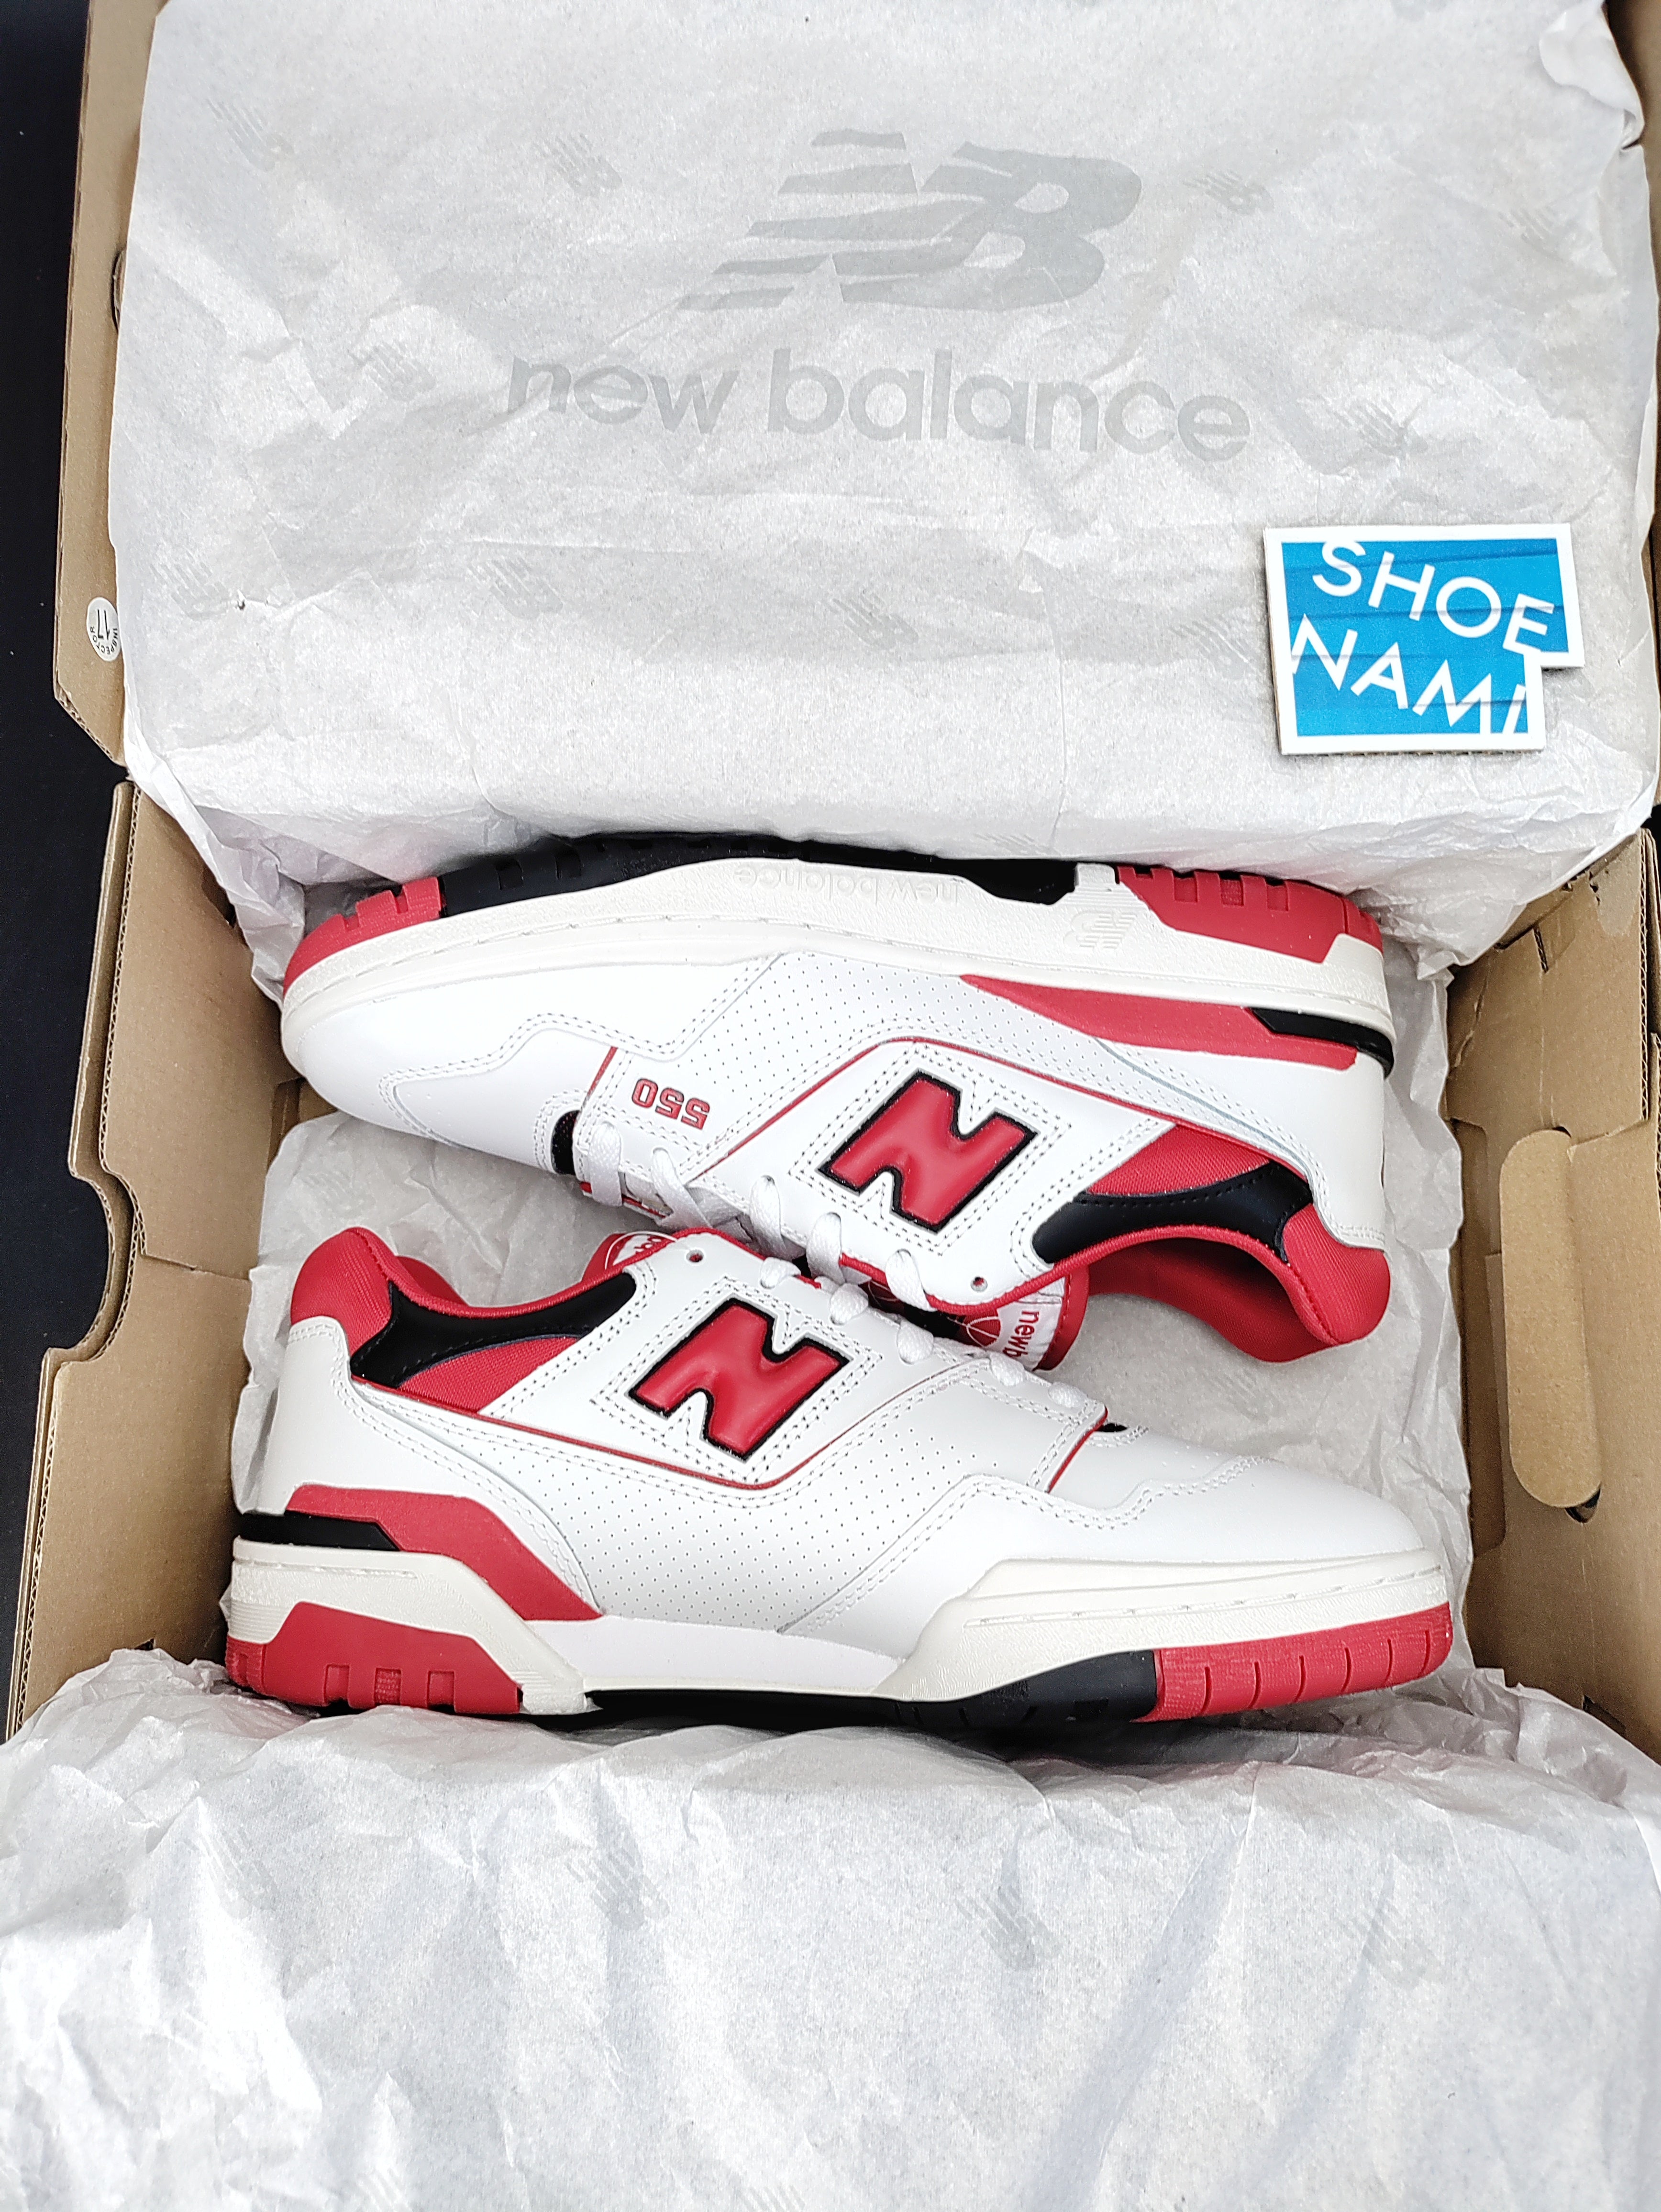 New Balance 550 'White/Red'